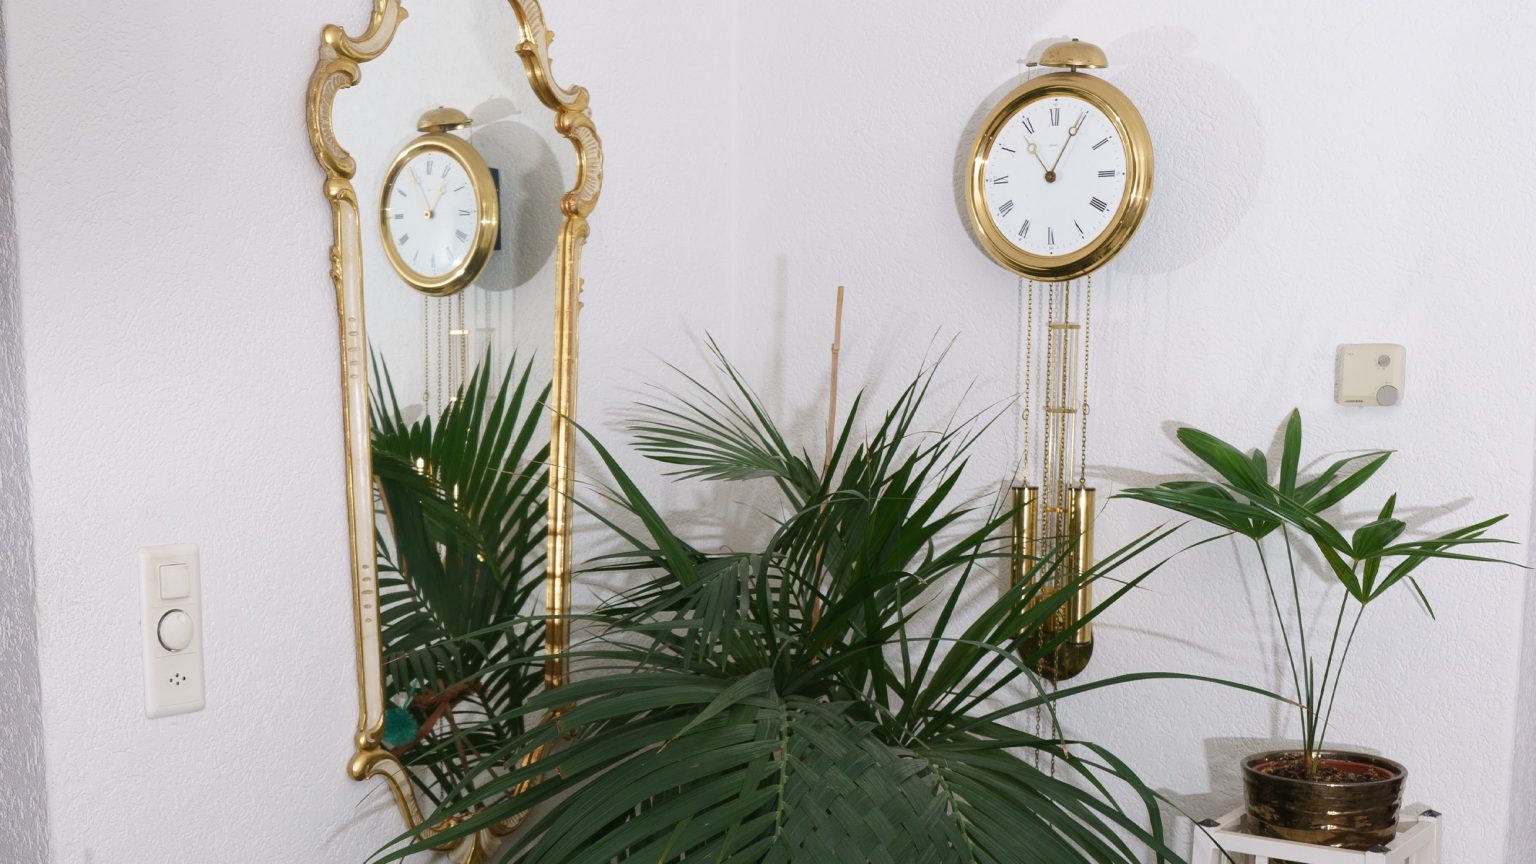 Ein Foto von Meinrad Grads Einrichtung zuhause mit einem altmodischen, vergoldeten Spiegel, einer Pendeluhr und Pflanzen in einer Ecke. Das Bild vermittelt ein Gefühl von Eleganz, Tradition und Naturverbundenheit in der Einrichtung.